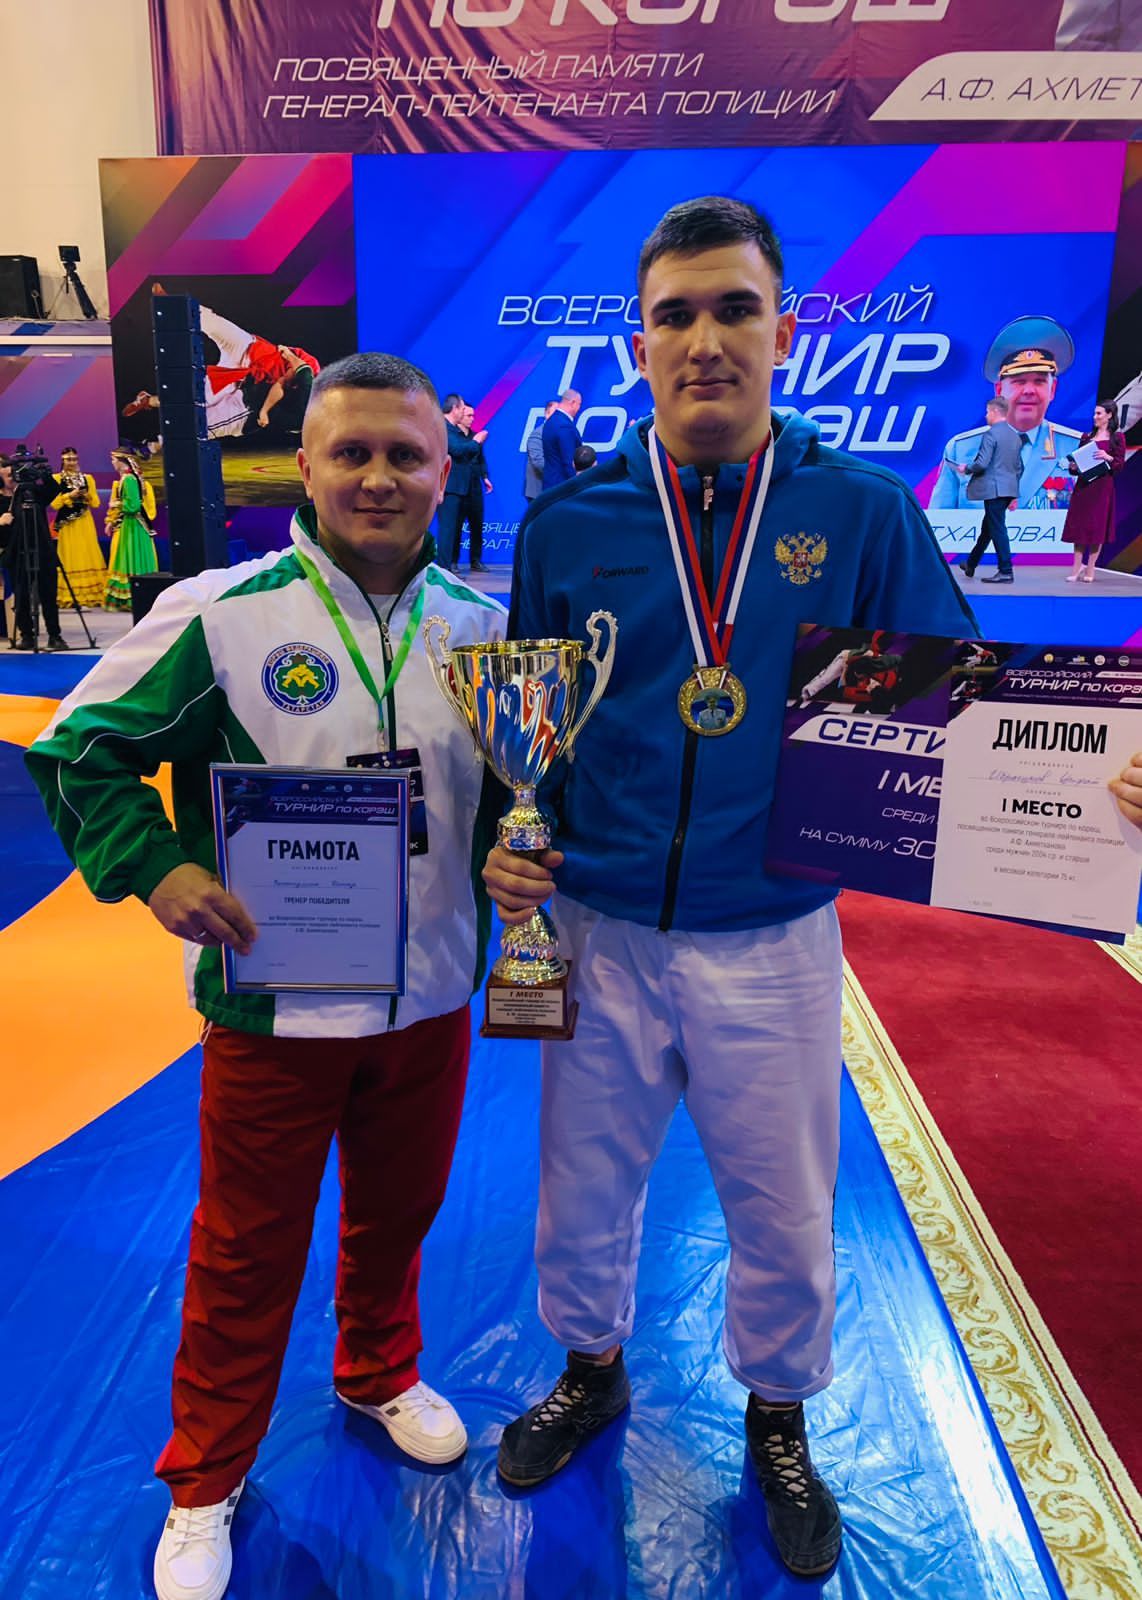 Ибрагимов Ульфат стал чемпионом Всероссийского турнира корэш